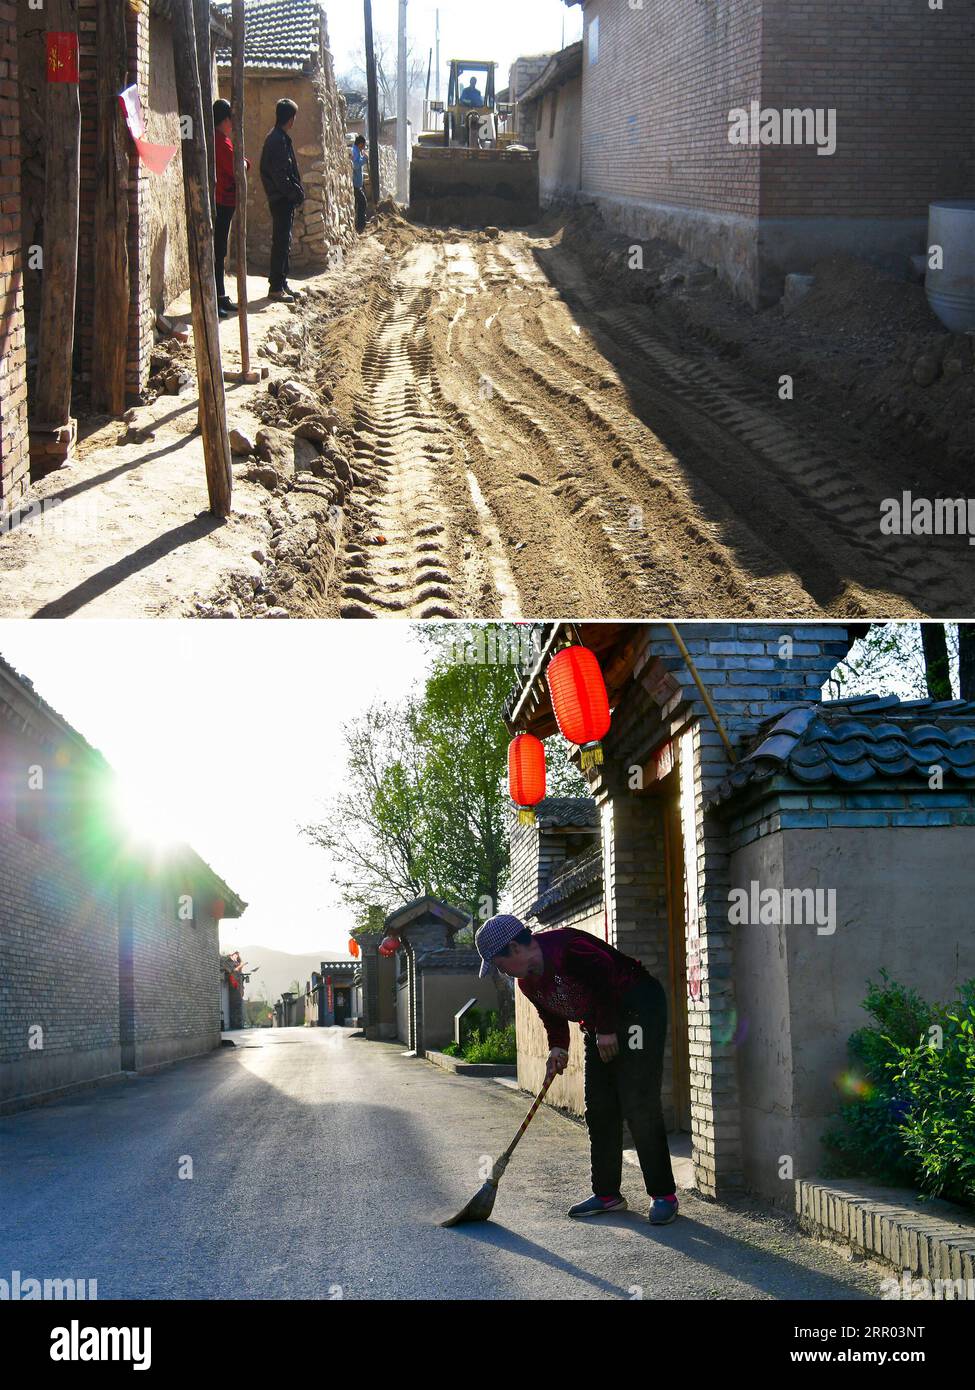 200727 -- TAIYUAN, 27. Juli 2020 -- Kombinationsfoto zeigt eine Dorfstraße im Bau im Dorf Songjiagou im Kreis Kelan, Xinzhou, nordchinesische Provinz Shanxi oben, undatiertes Dateifoto und eine Dorfbewohnerin, die ihre Türschwelle im selben Dorf am 9. Mai 2020 unten schwingt, Foto aufgenommen von . Songjiagou, einst ein Dorf, das für seine raue Lebensbedingungen bekannt war, wurde 2017 als Ort für die nahe gelegenen 145 verarmten ländlichen Haushalte ausgewiesen. Das Songjiagou Village, das von Kelan County unterstützt wird, nutzte diese Gelegenheit und baute sich selbst wieder auf, indem es schäbige Häuser abbaute und ländliche Siedlungen entwickelte Stockfoto